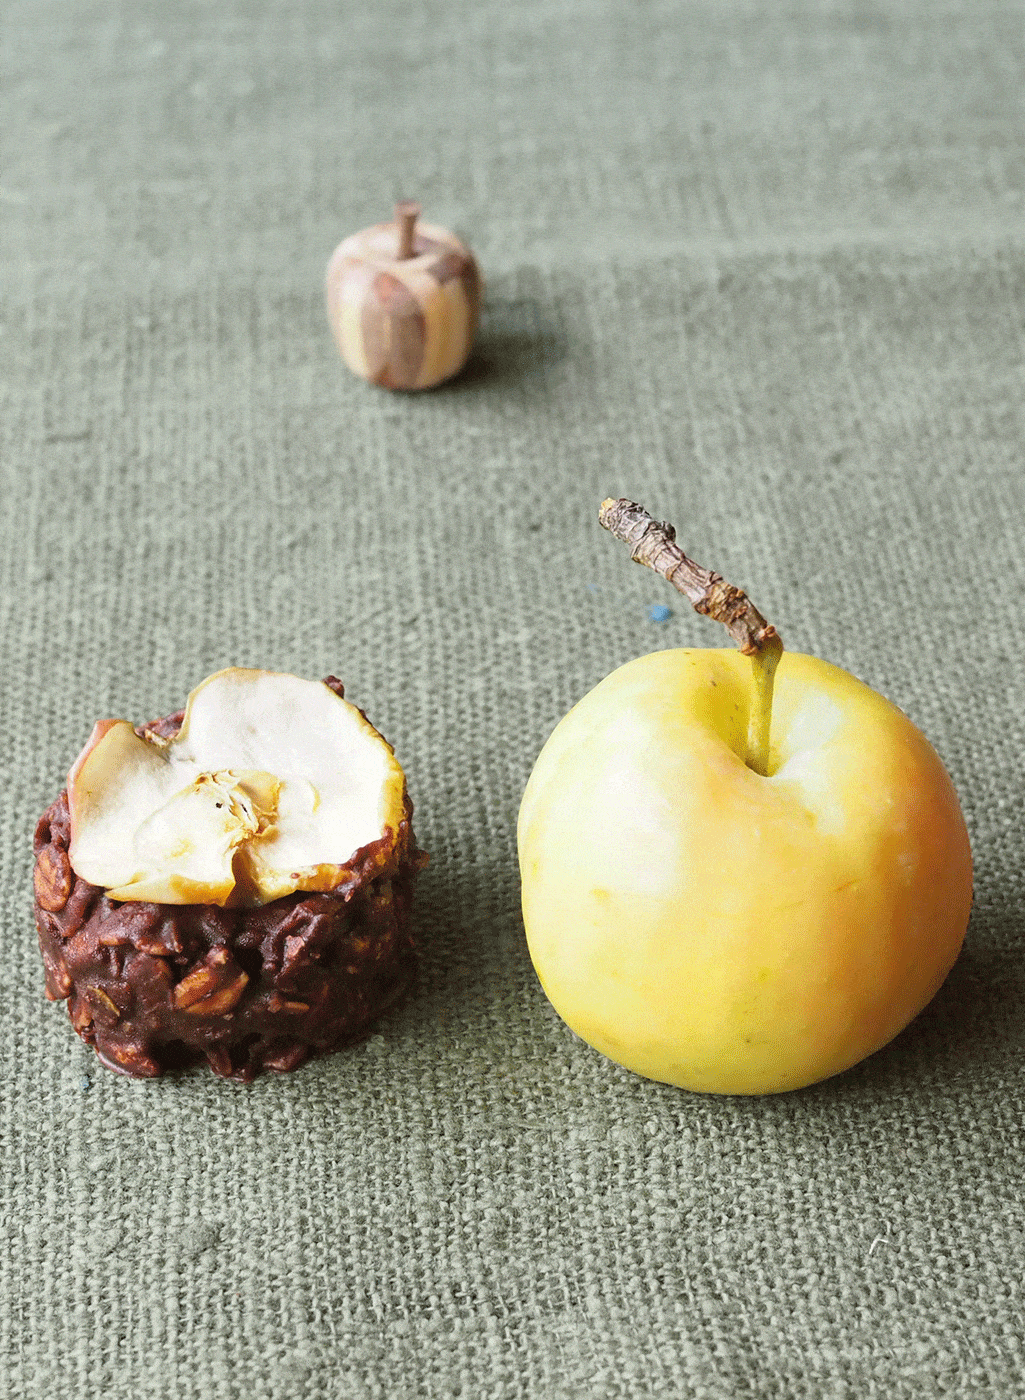 ふるカフェ系ハルさんの休日で登場した彦根りんごを使用したチョコレート。